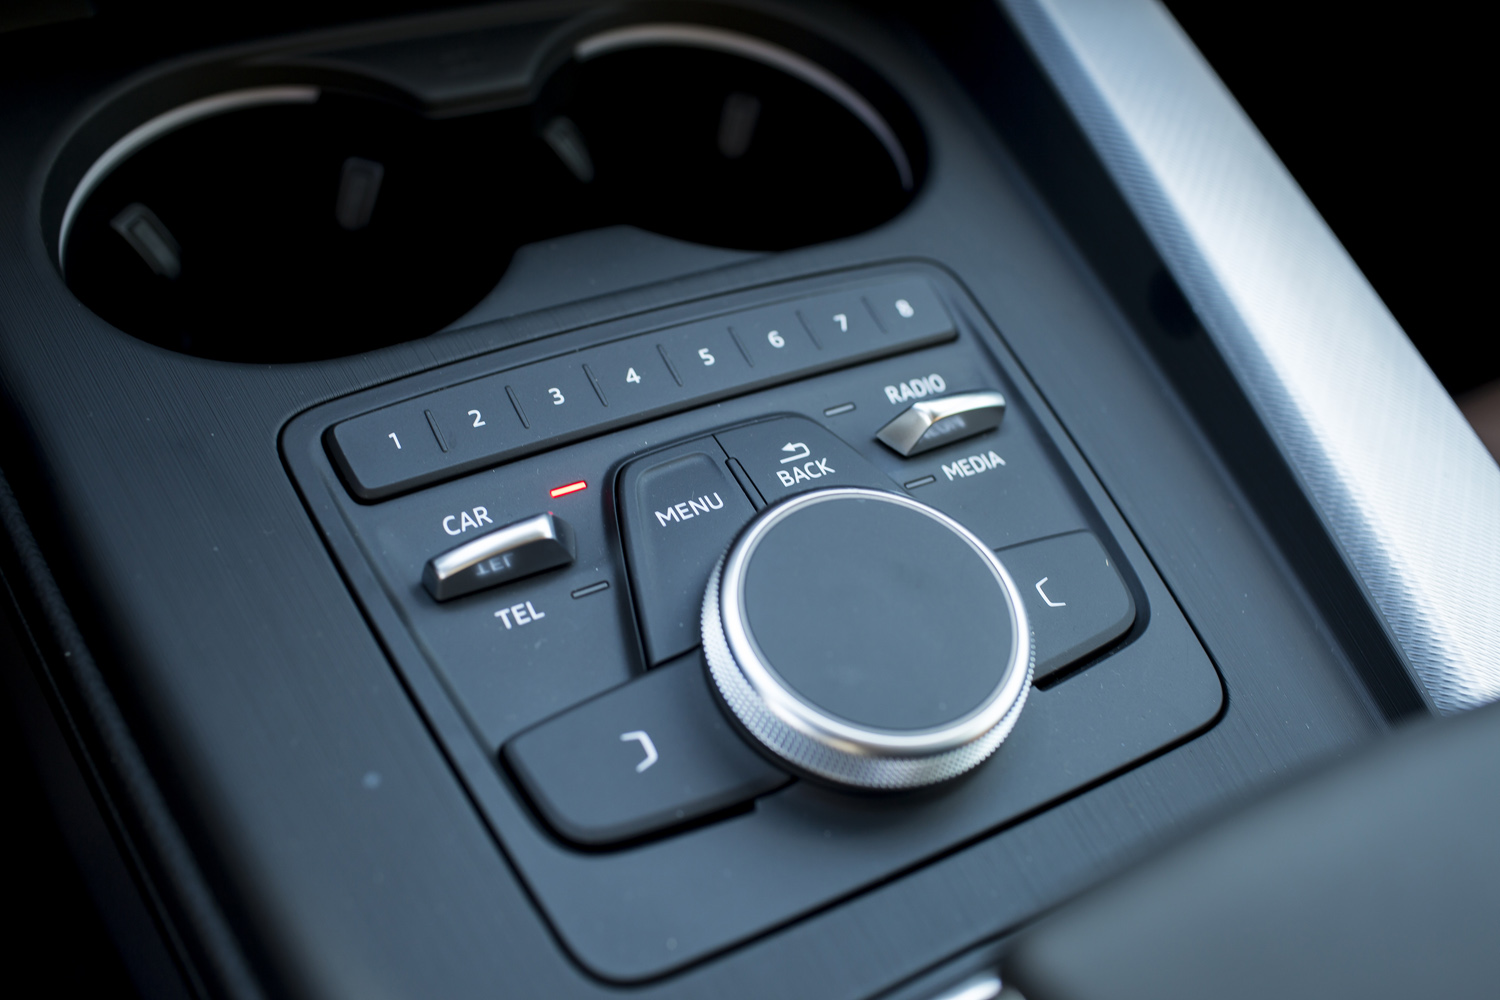 
Núm xoay điều chỉnh cùng các nút điều khiển hệ thống thông tin giải trí trên Audi A4 thế hệ mới.
